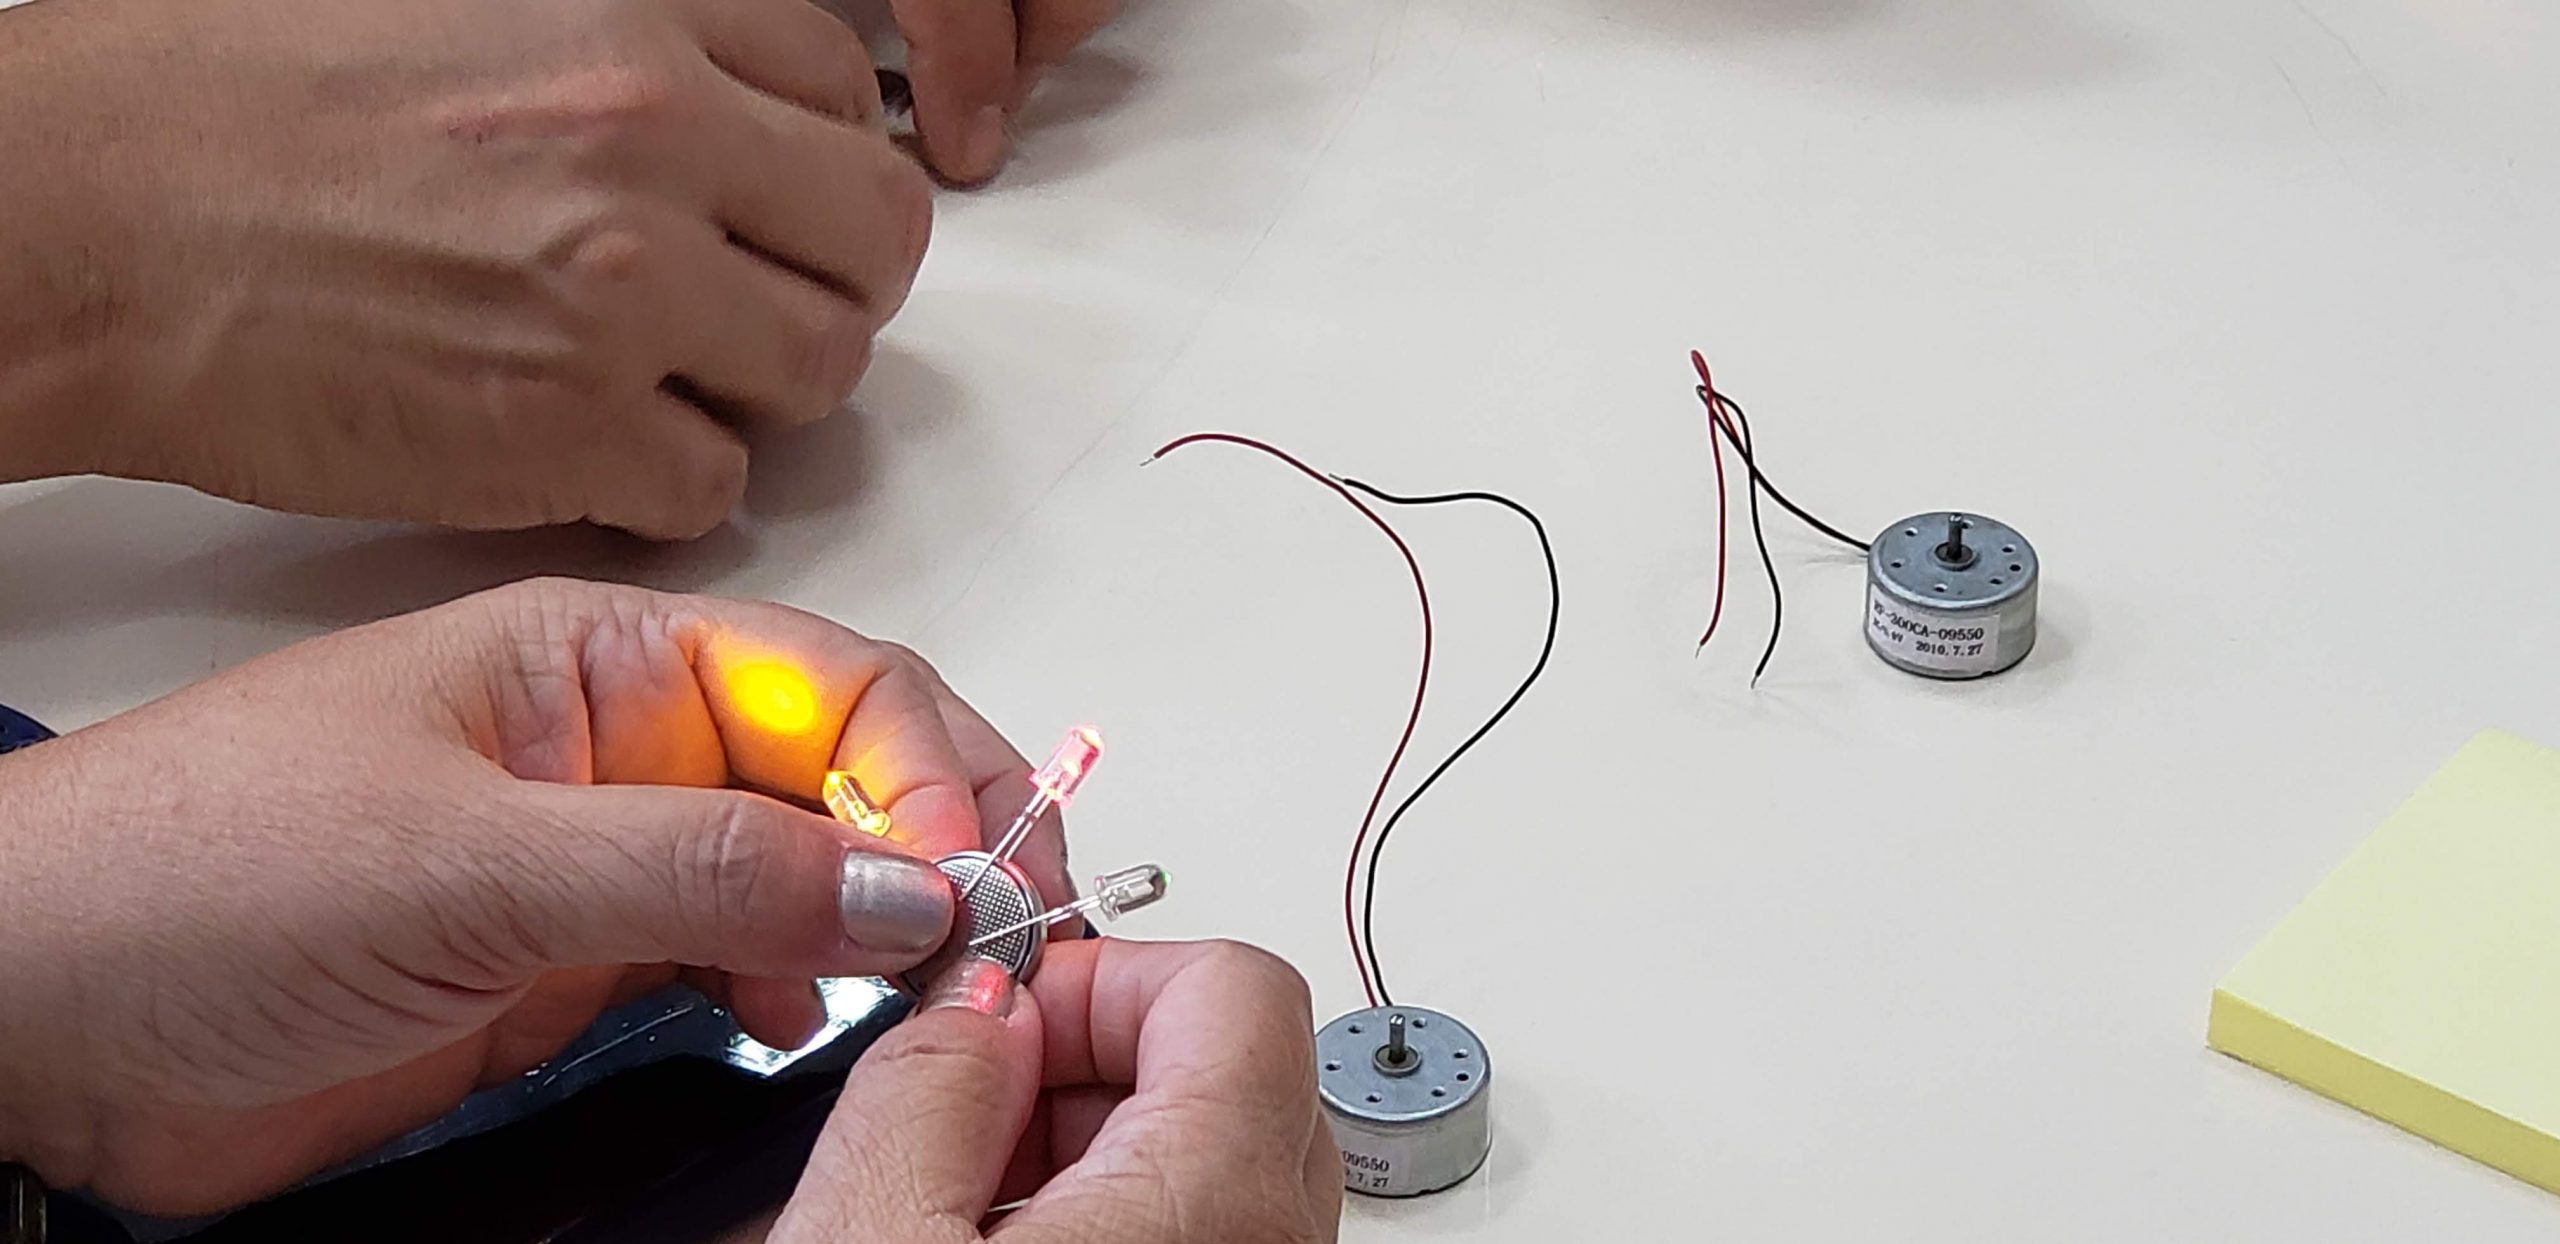 Você está visualizando atualmente Eletricidade e Circuitos com Tinkering e Maker